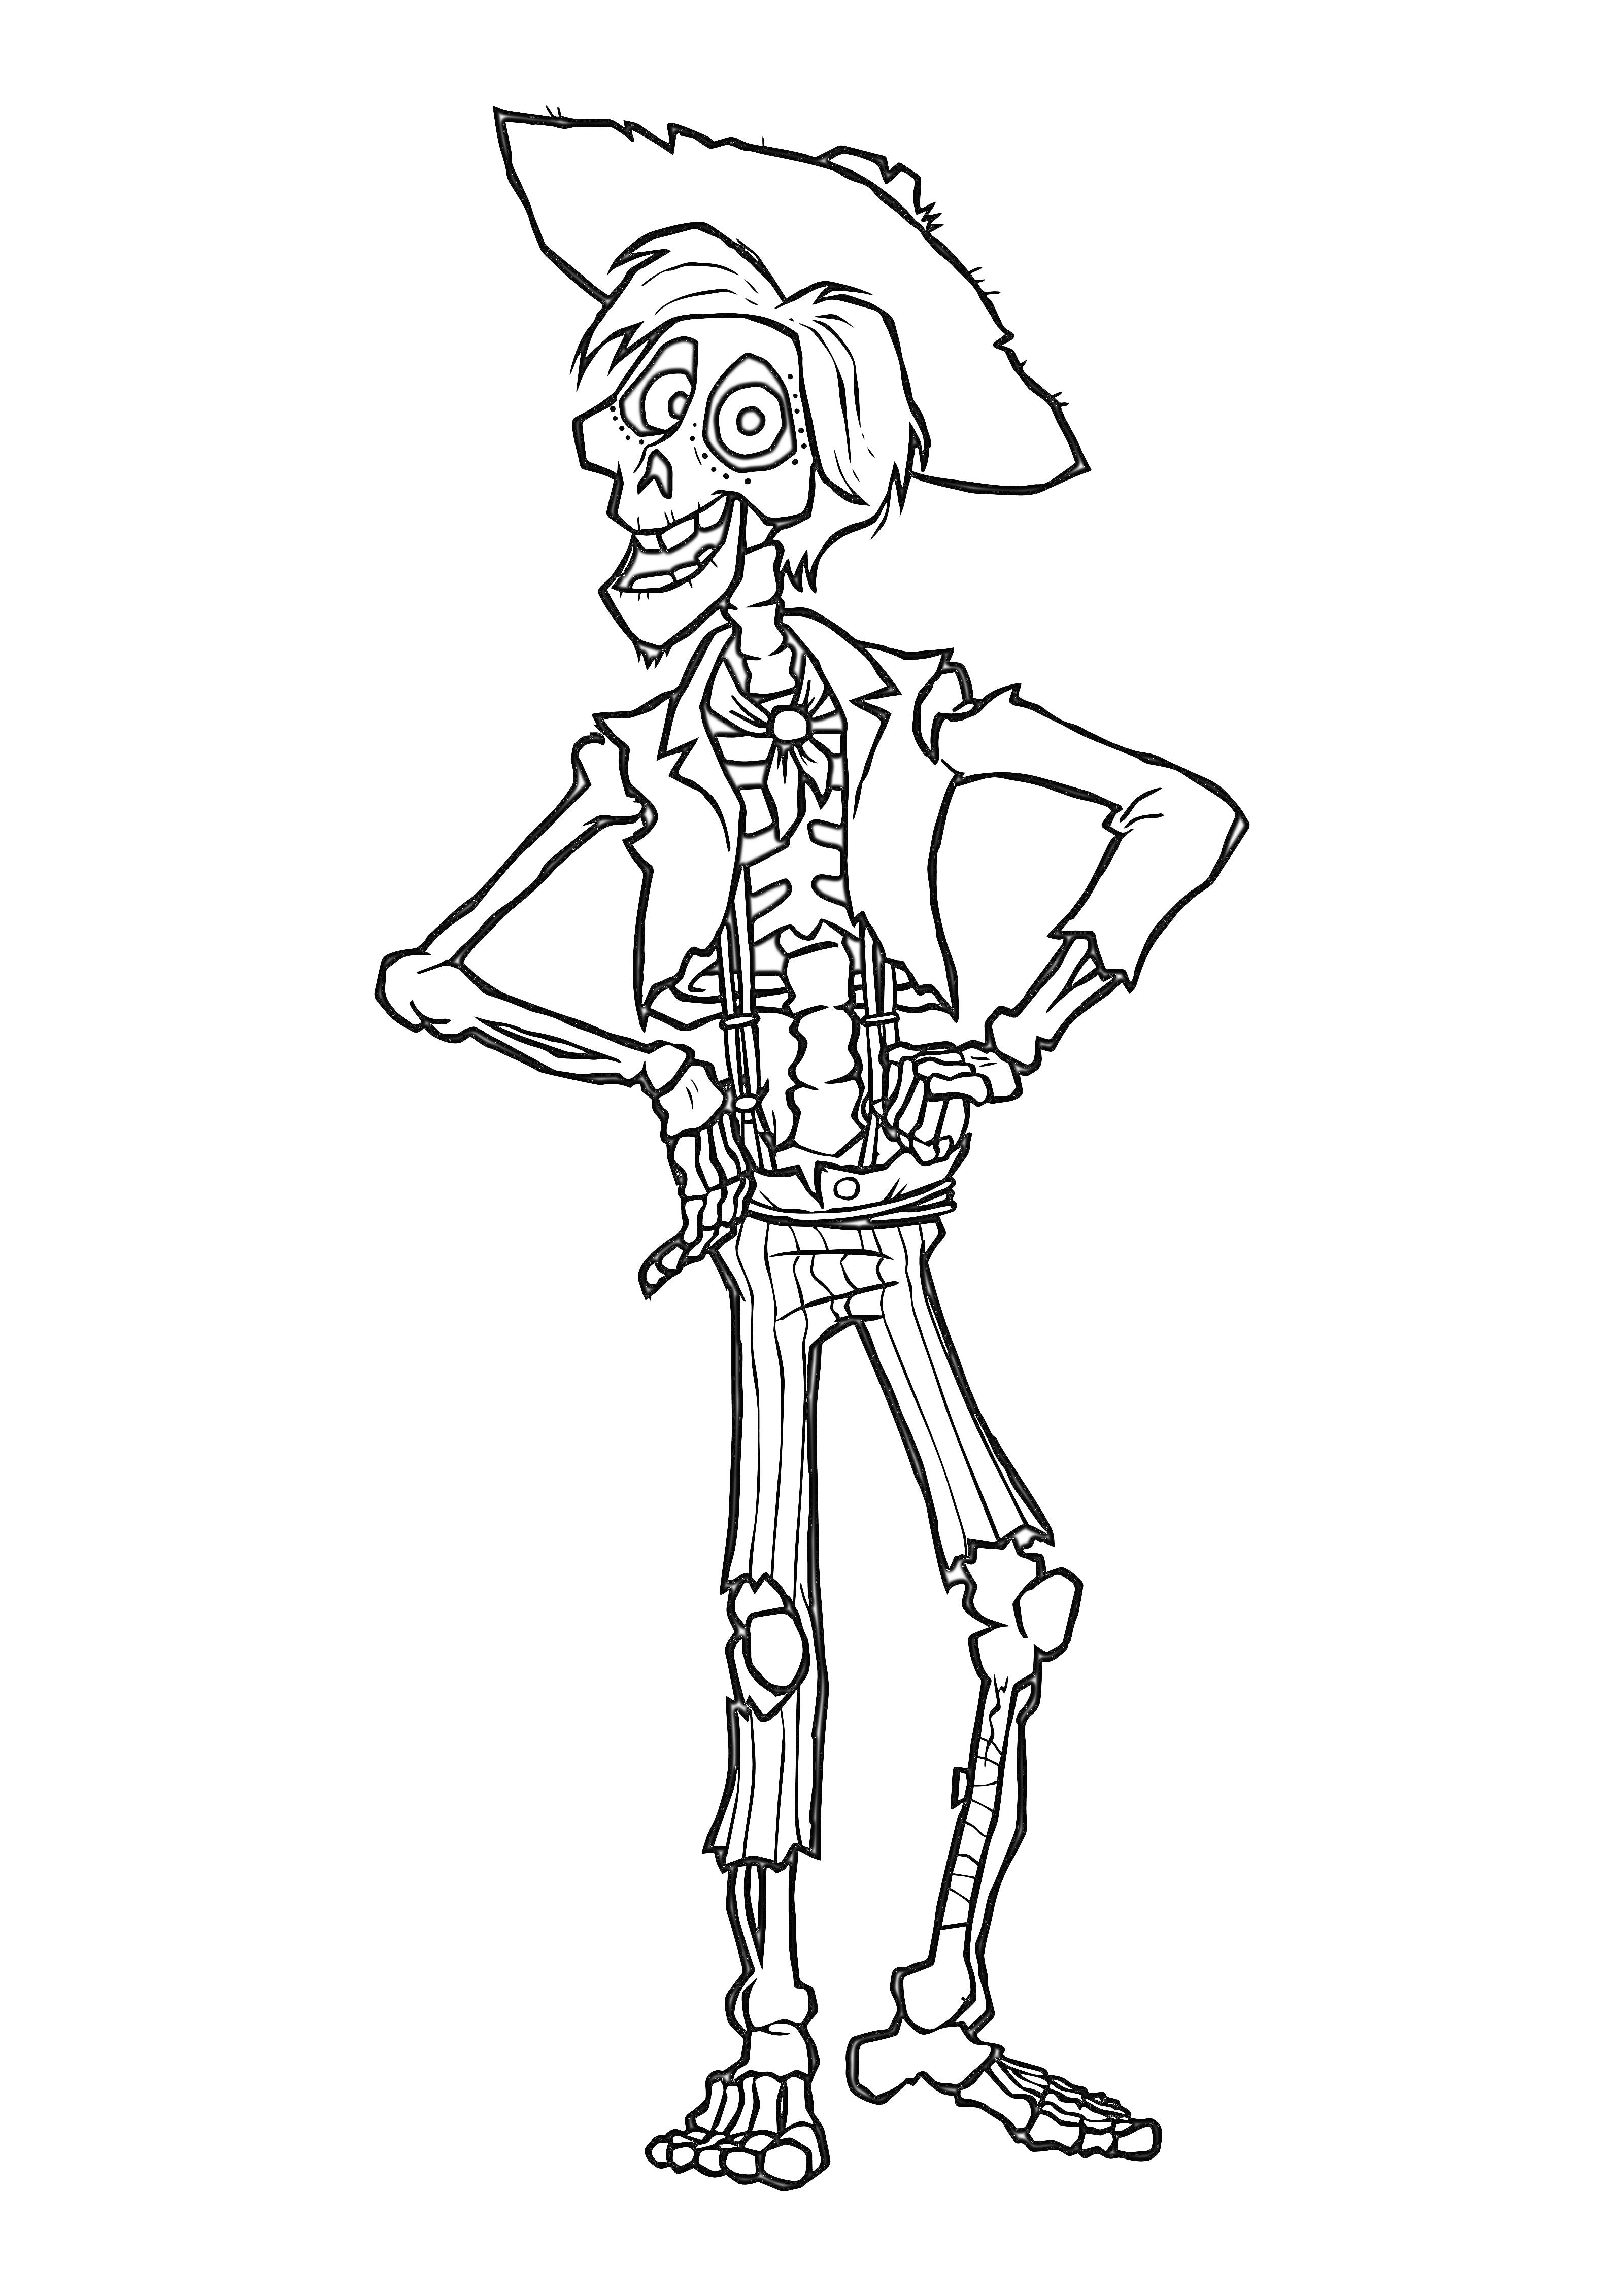 Раскраска Скелет с шляпой и курткой из Тайна Коко